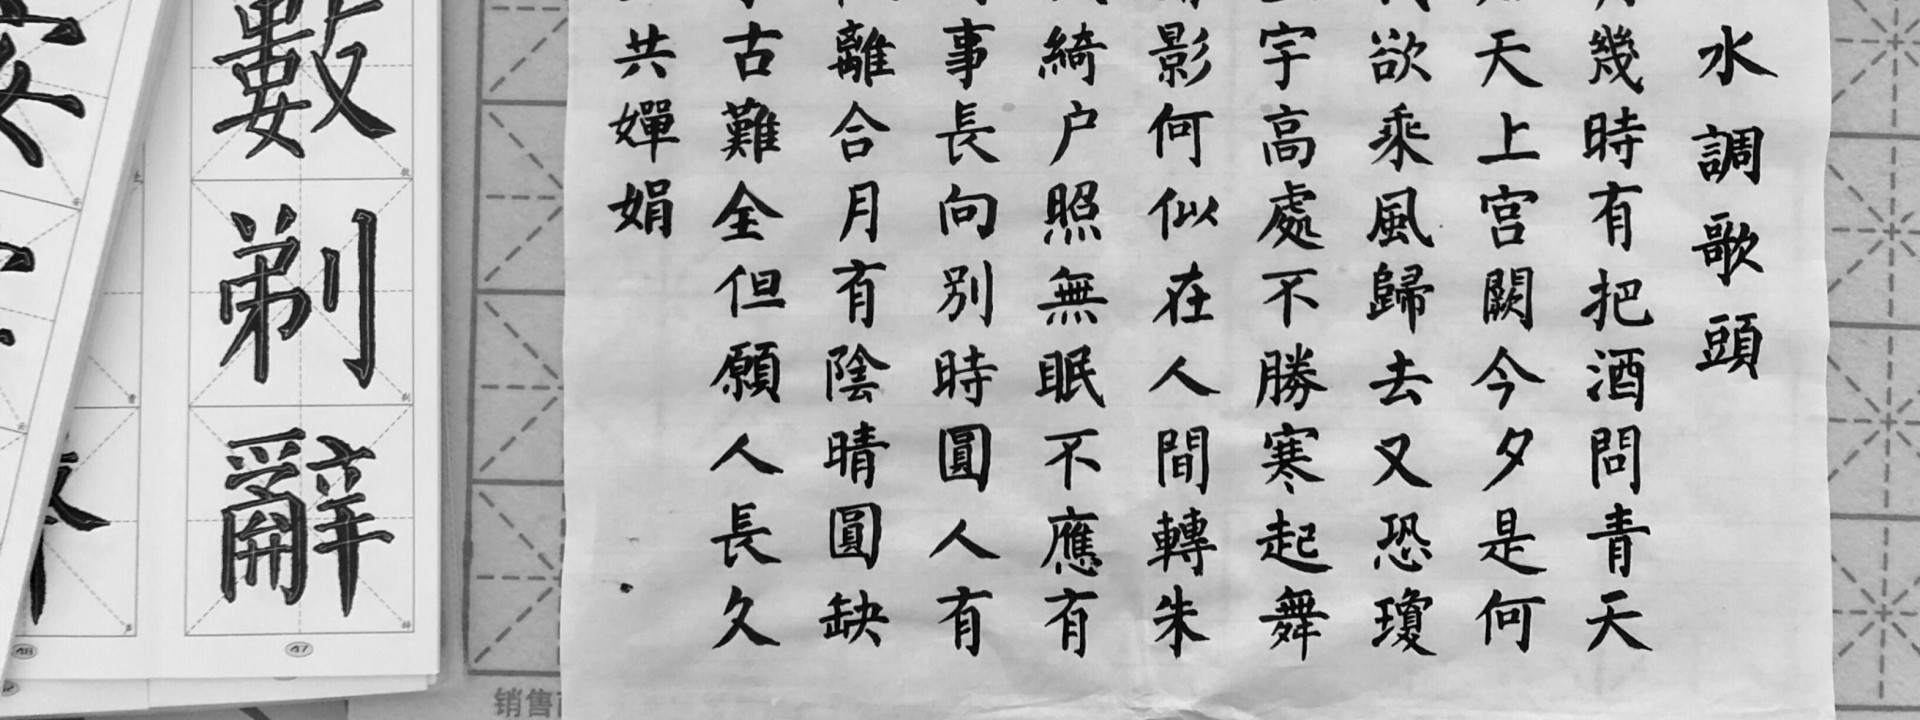 Foto chinesischer Kalligraphie